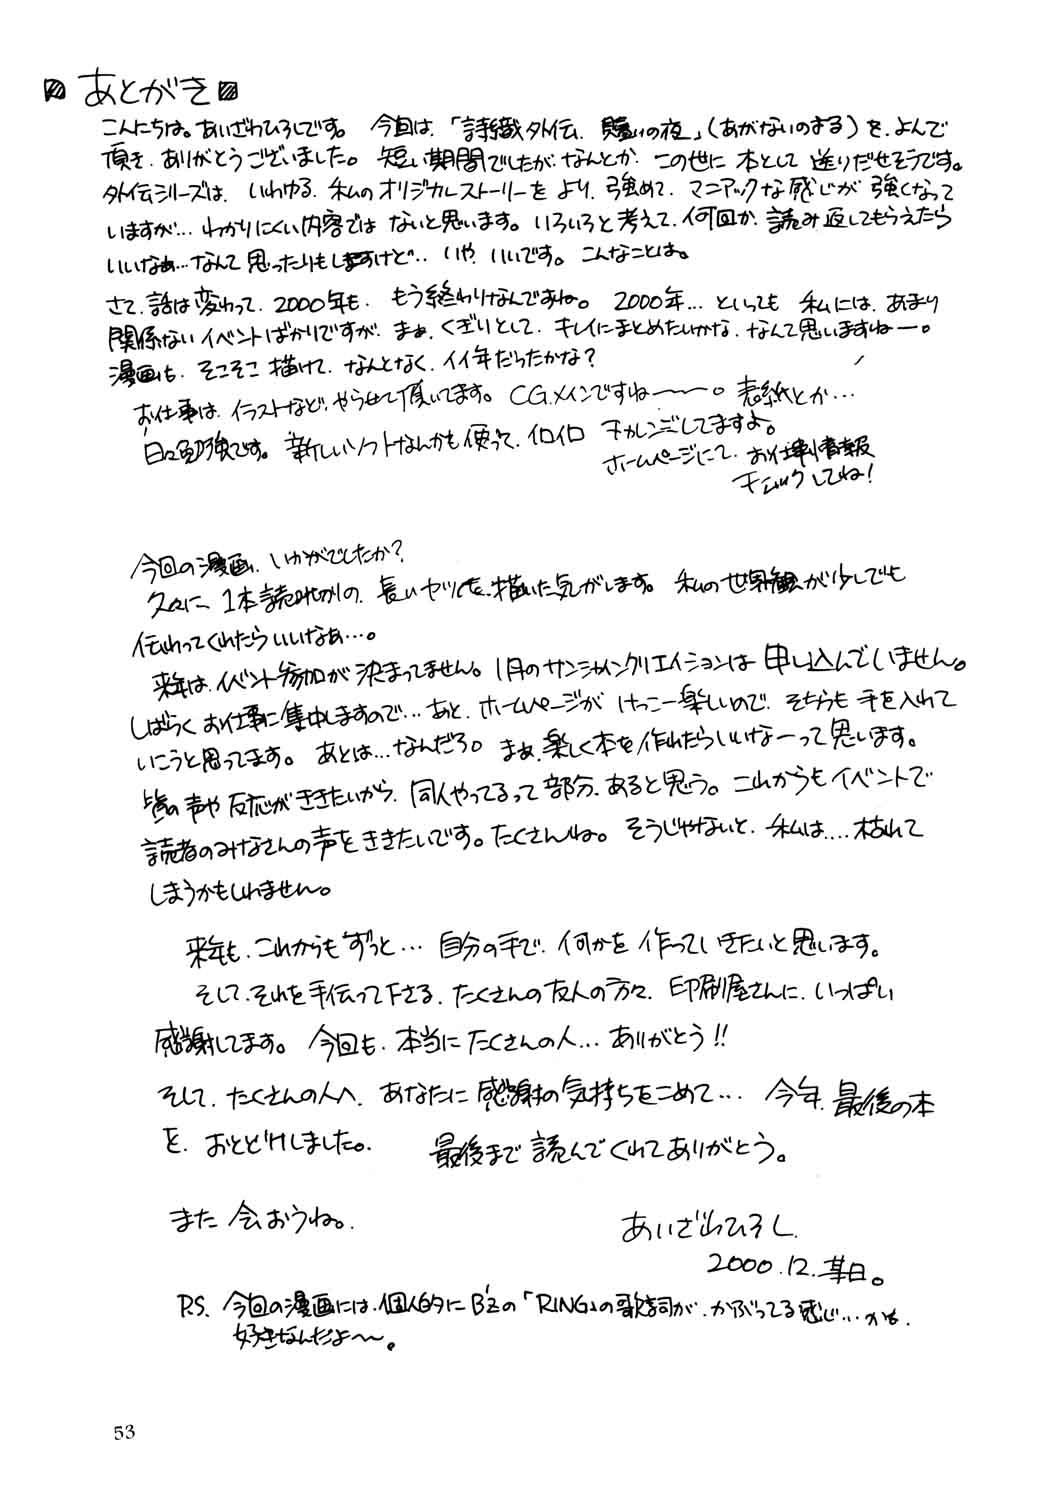 Russia Shiori Aganai no Yoru - Tokimeki memorial Mmd - Page 54